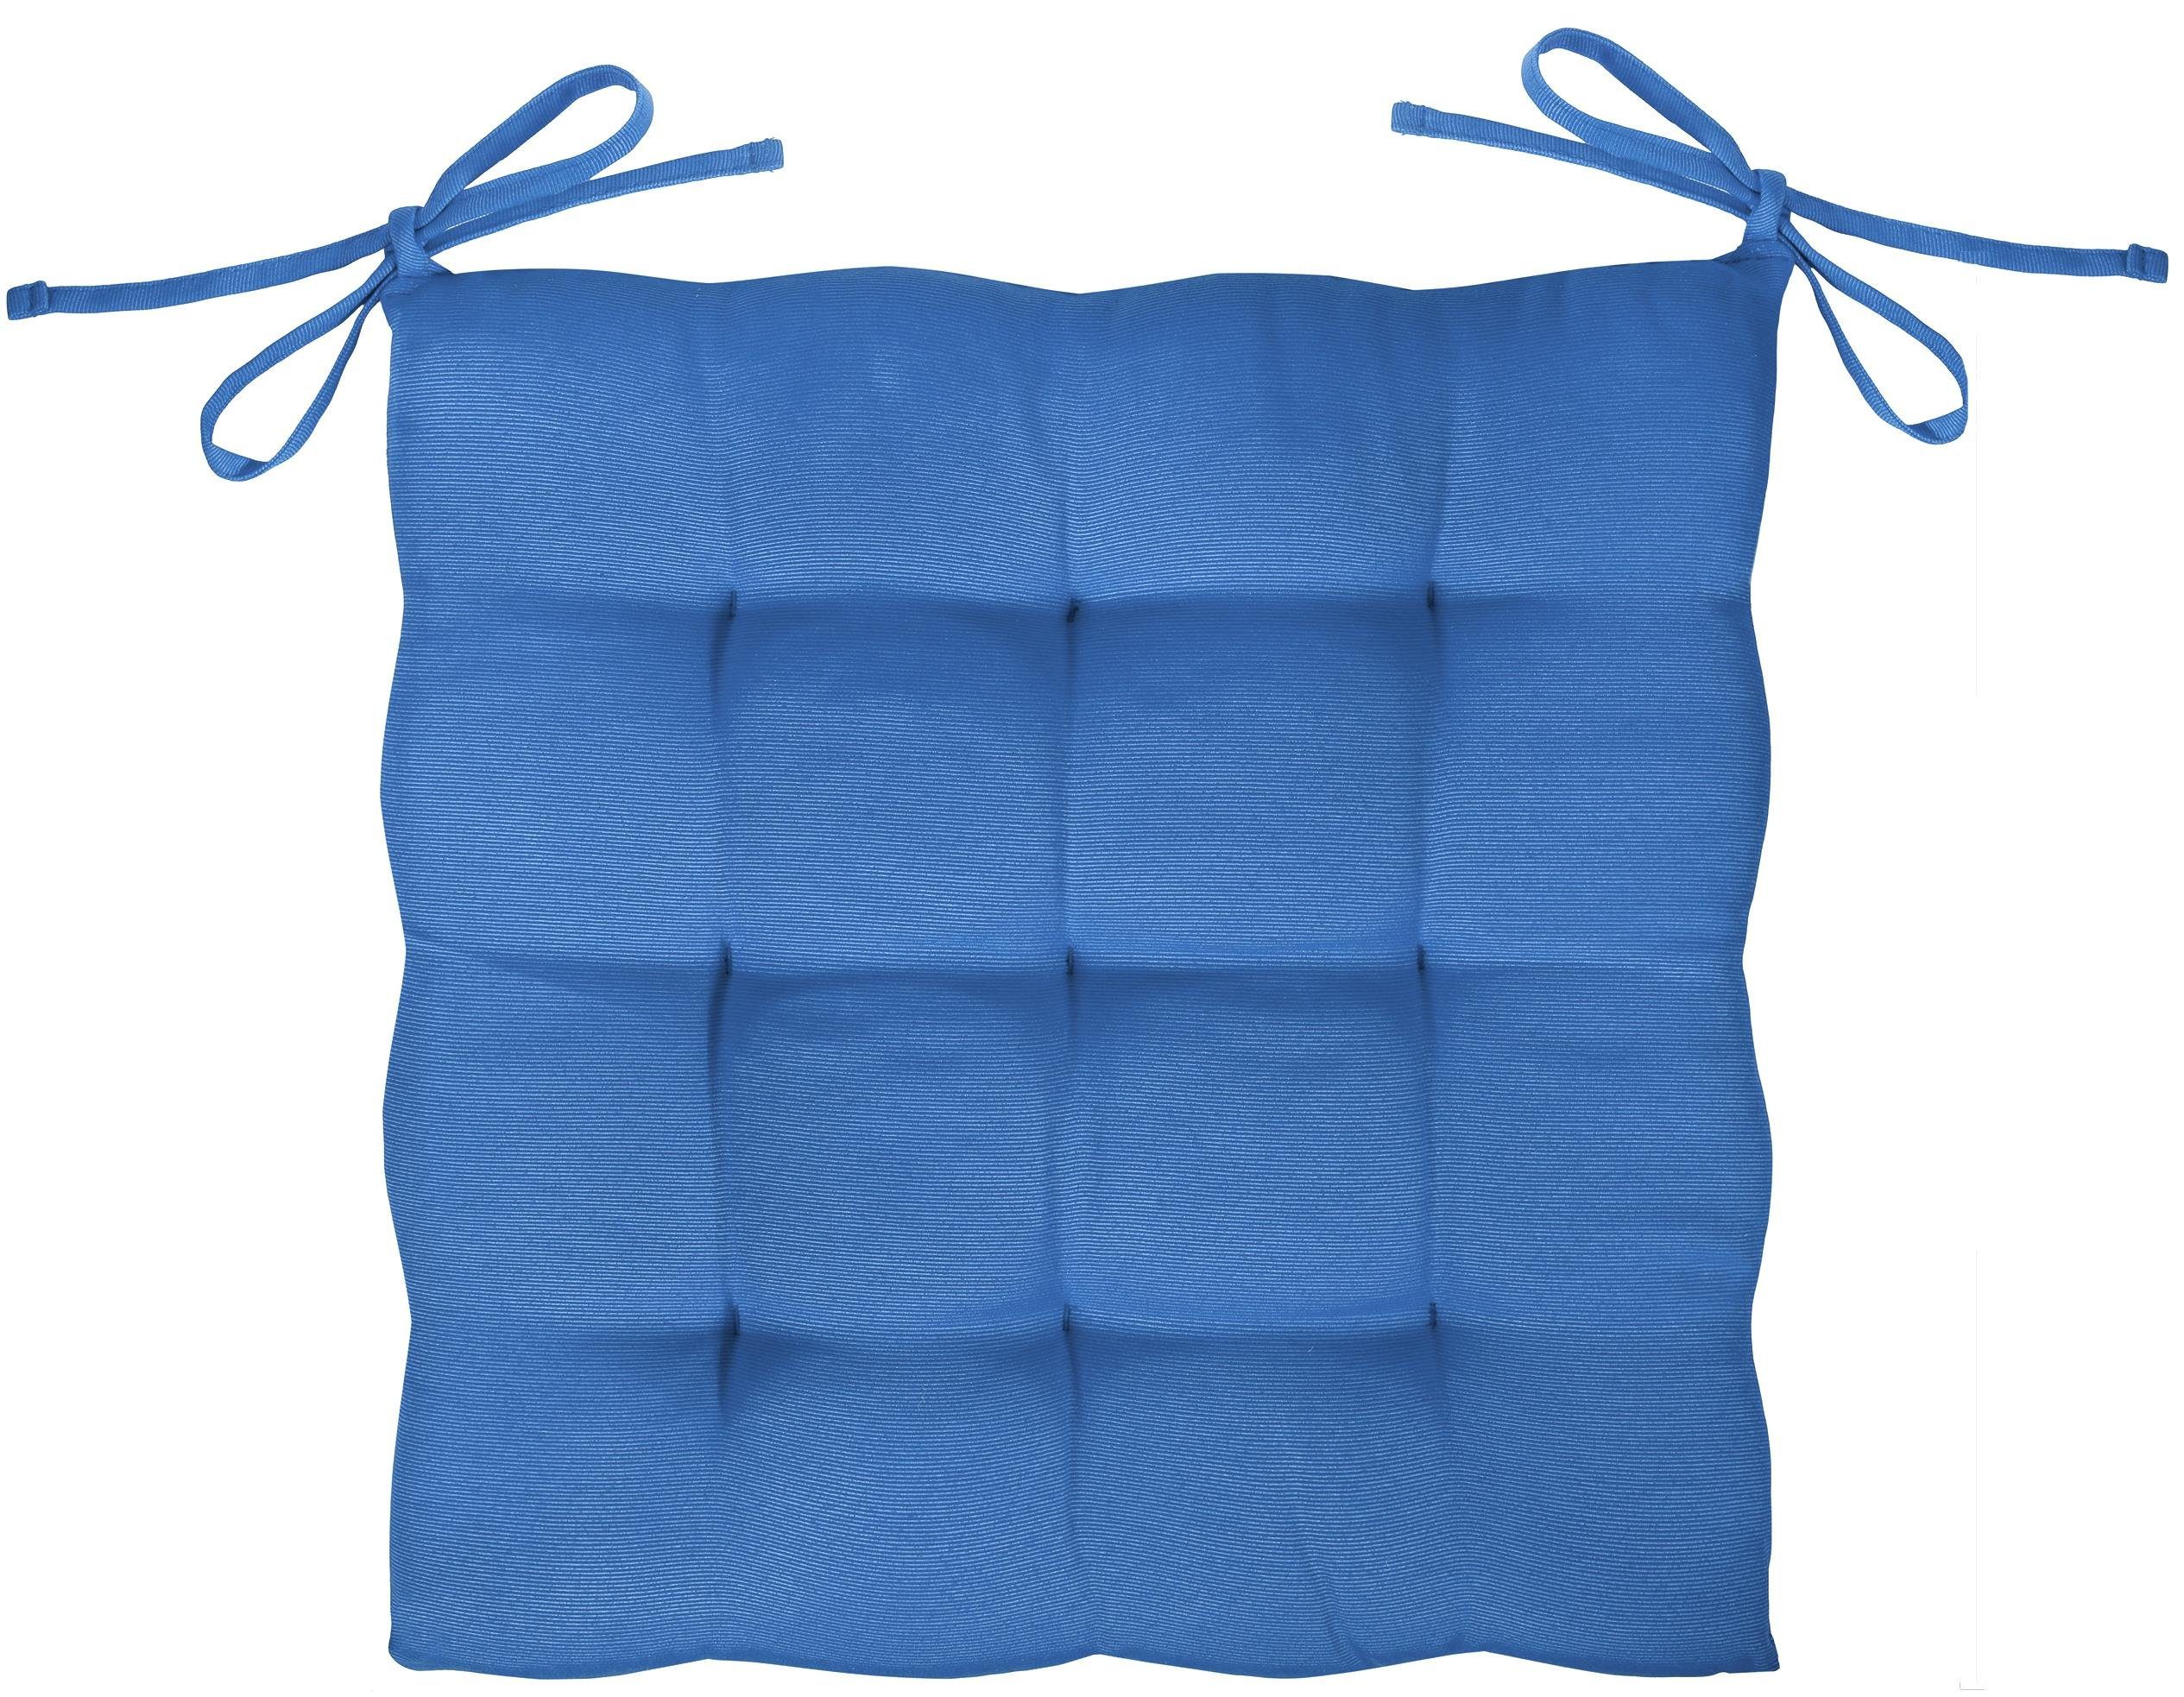 GREEN MARK Textilien Innen, oder Sitzkissen weich für blau Royal gefüllt, Sitzkissen, Stuhlkissen Außen 40x40cm